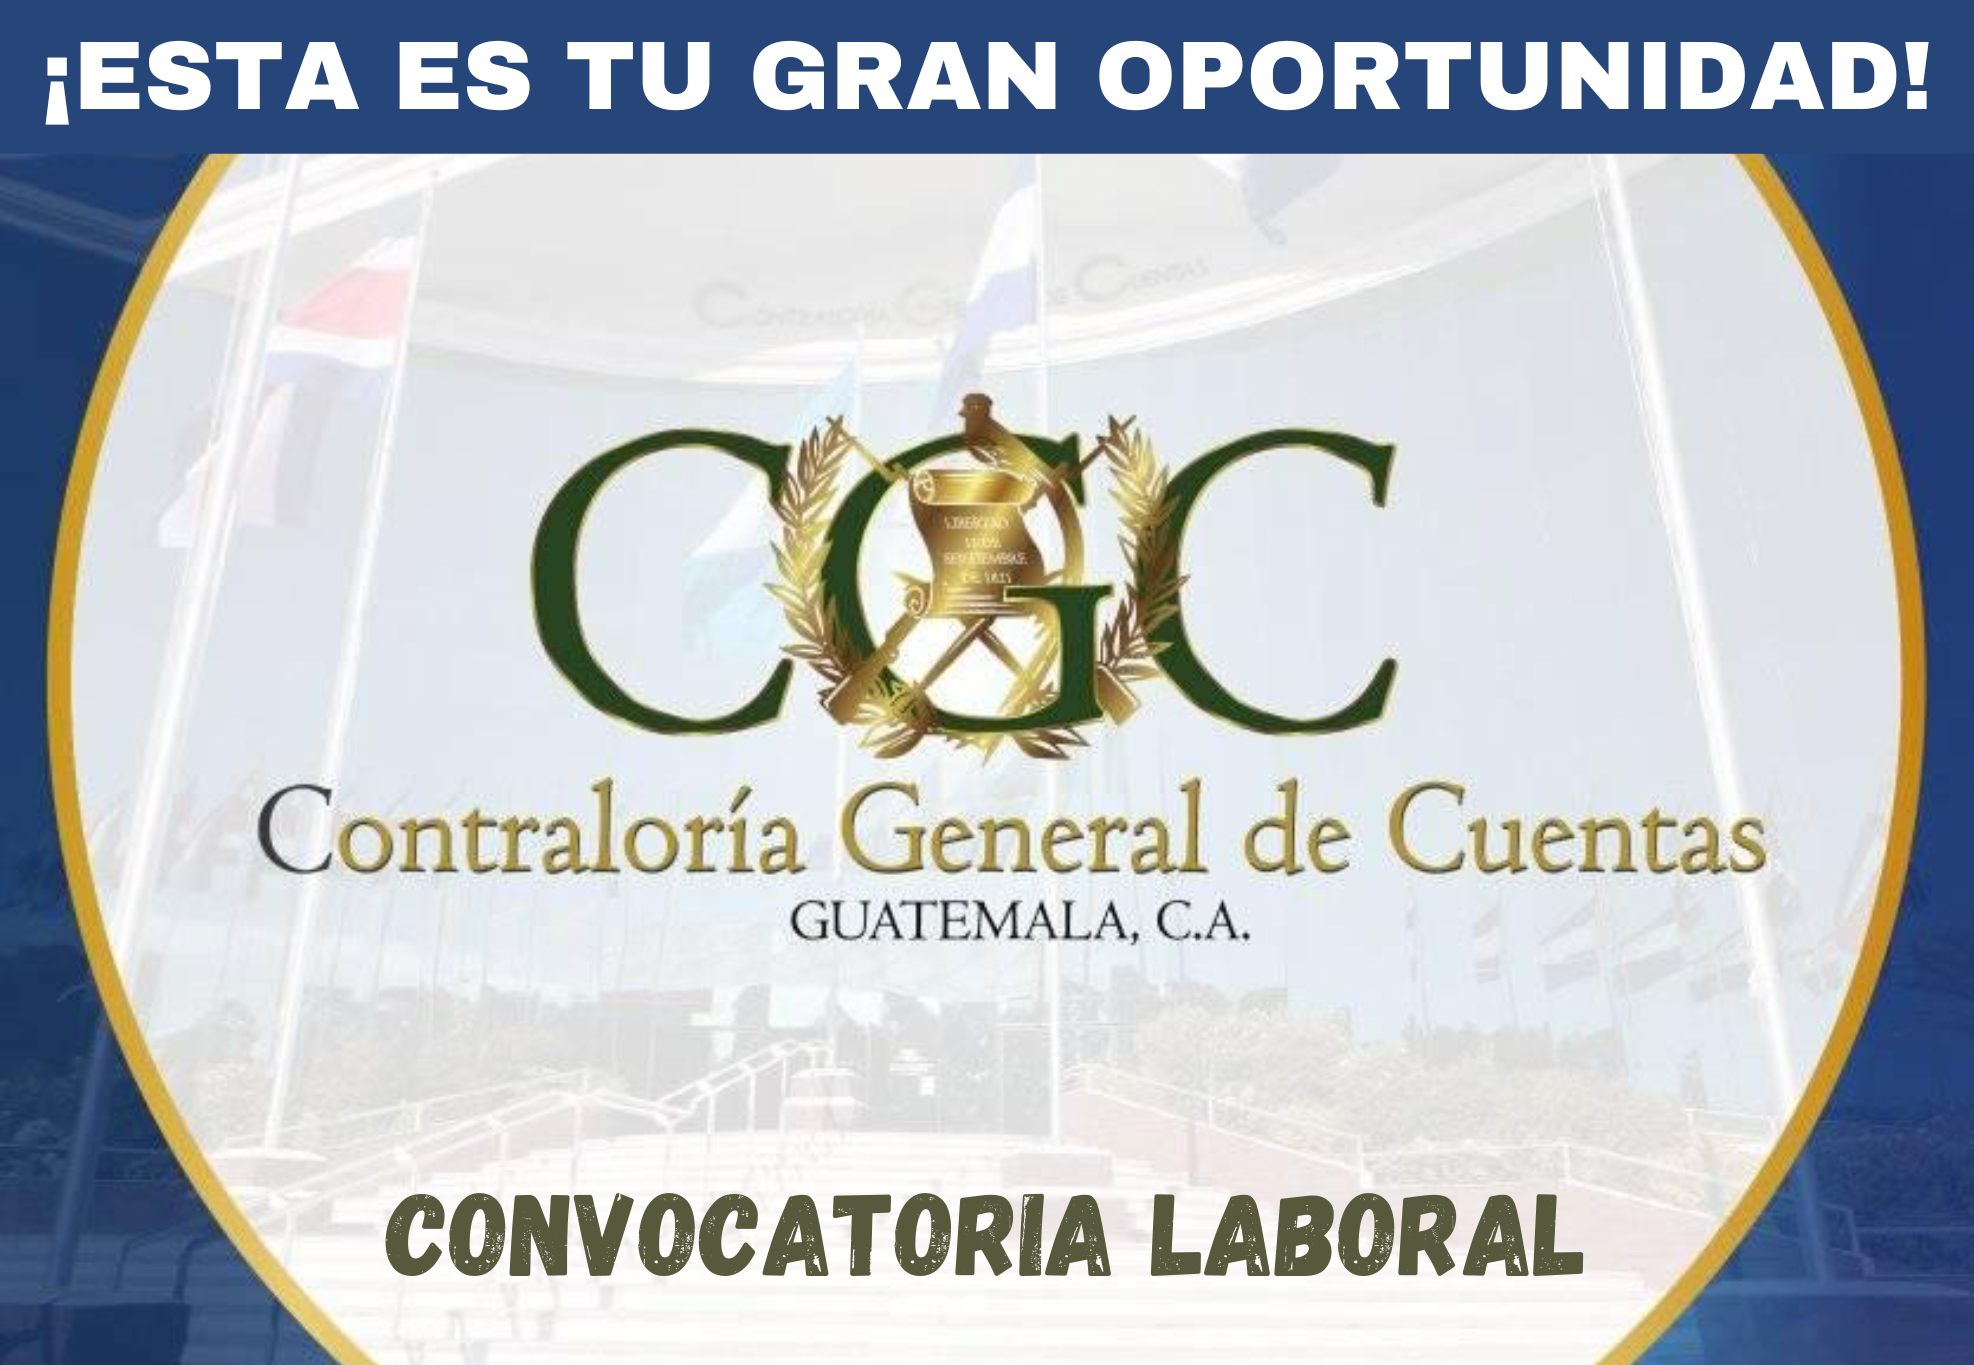 OFERTA LABORAL EN LA CONTRALORIA GENERAL DE CUENTAS EN GUATEMALA